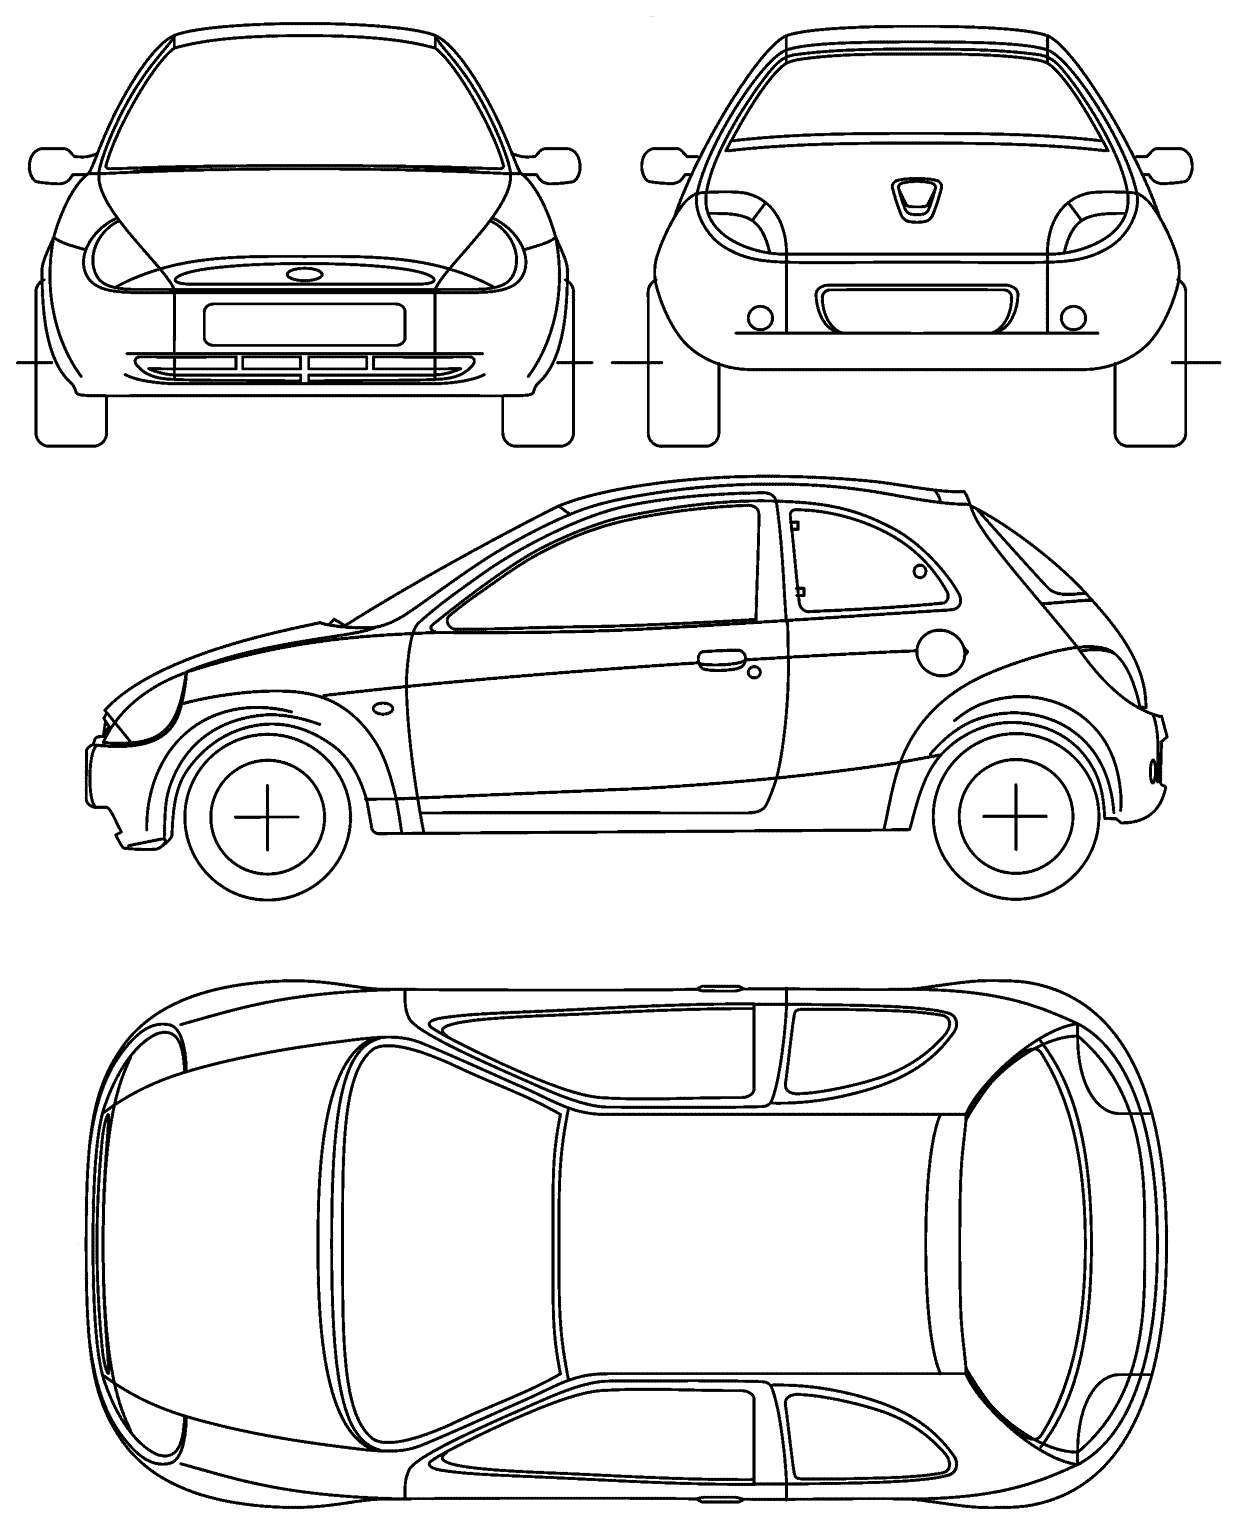 1996 Ford Ka Hatchback blueprints free - Outlines